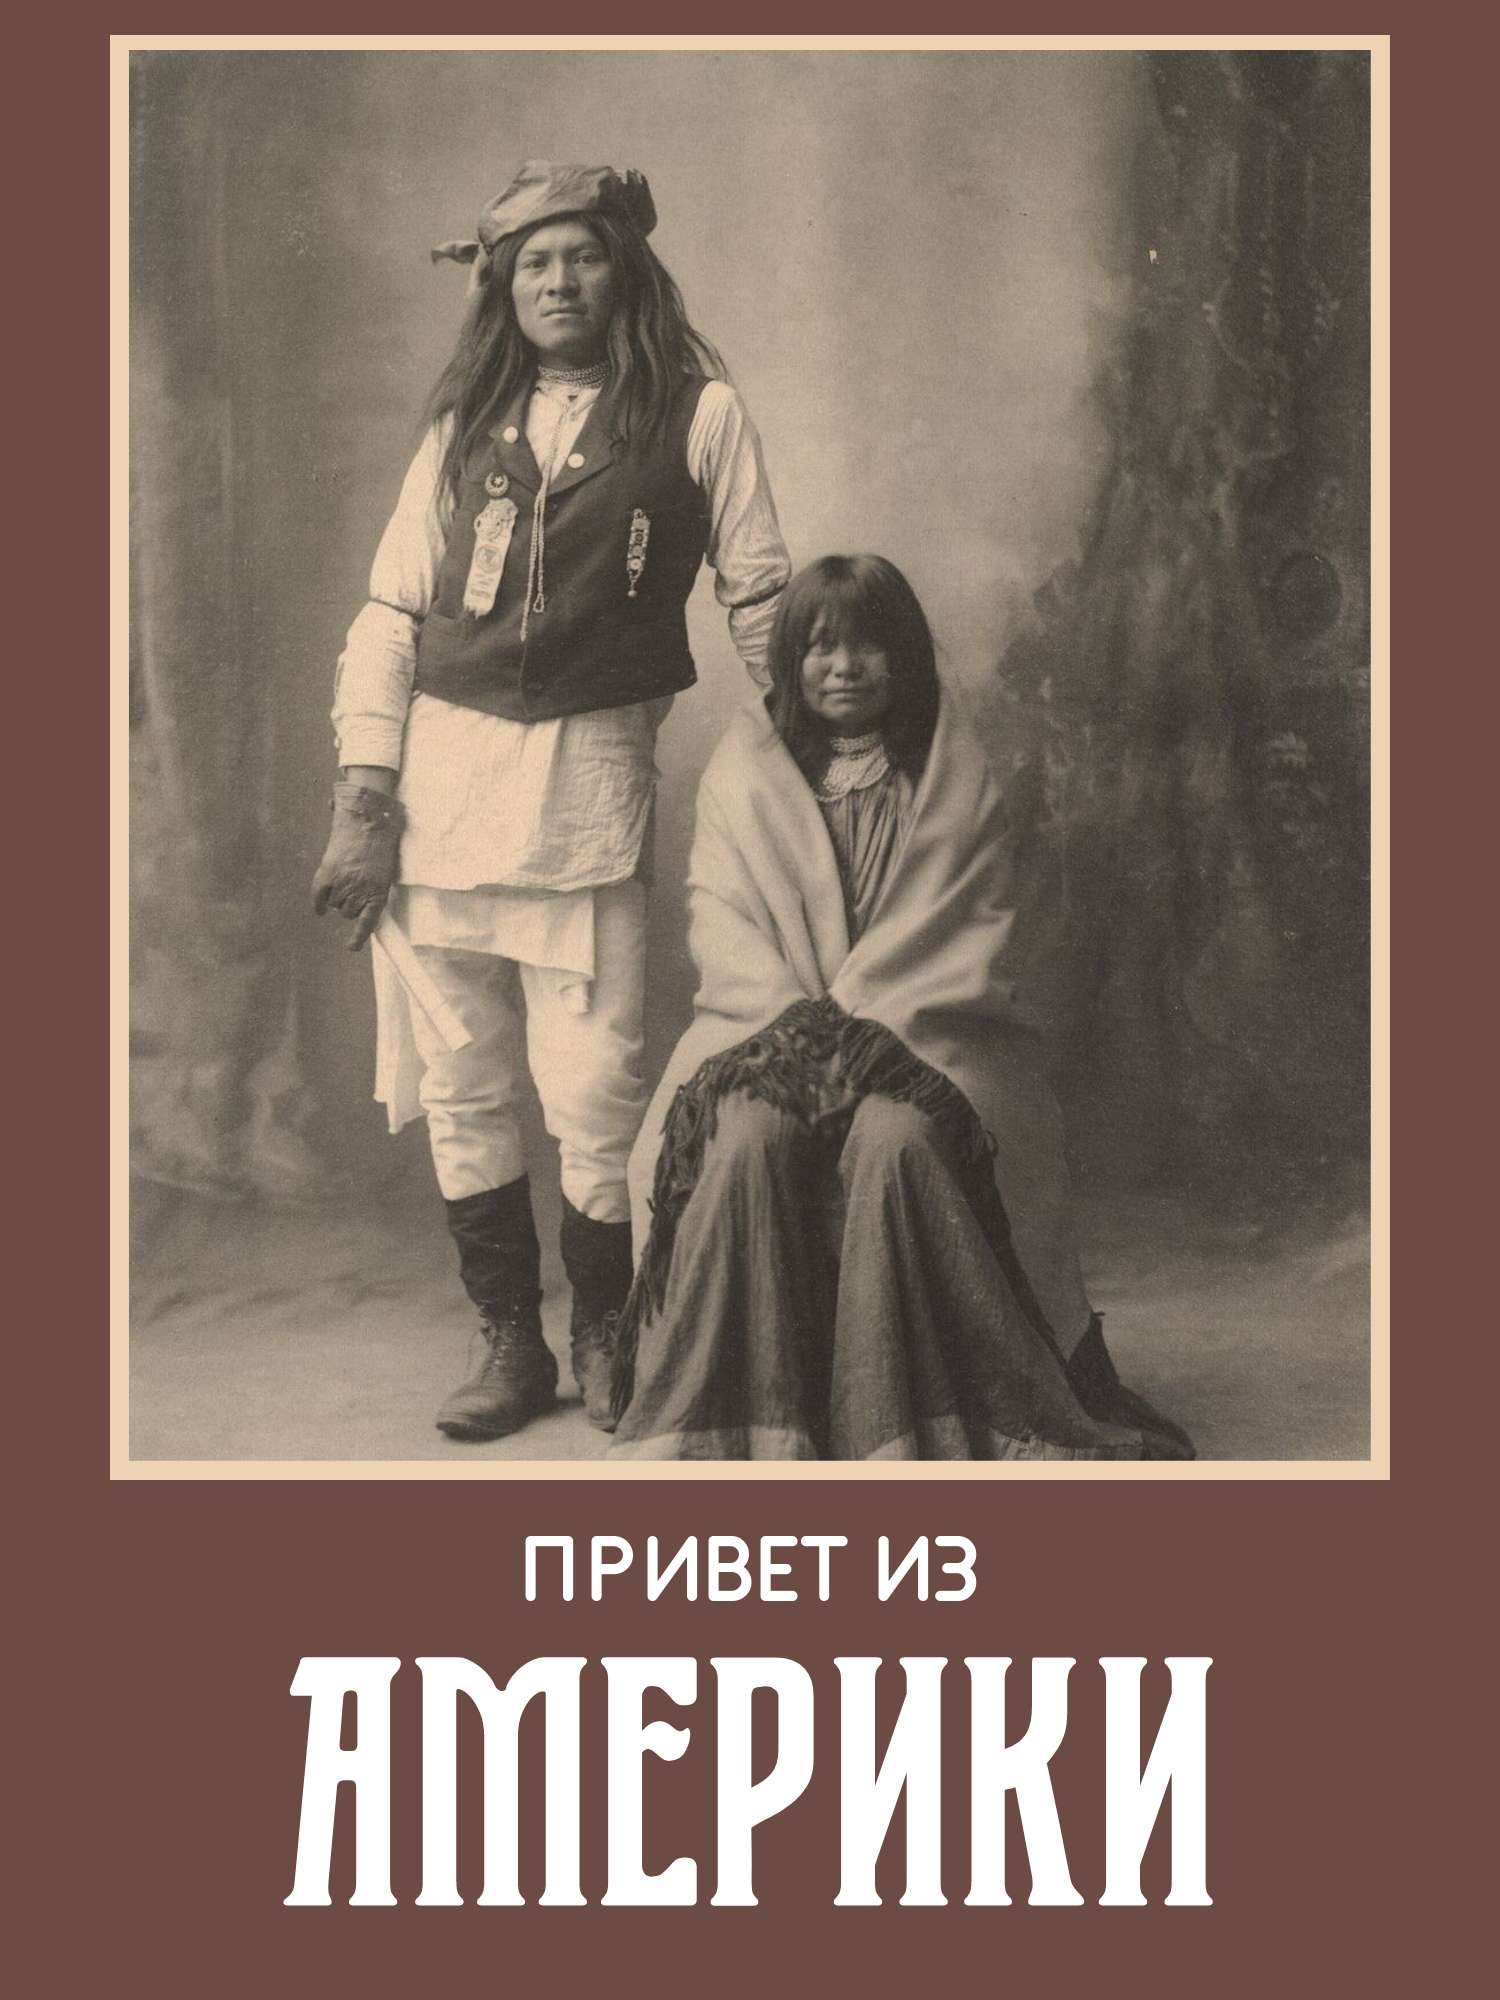 Публикация с черно-белым фото с коренными индейцами на темно-коричневом фоне